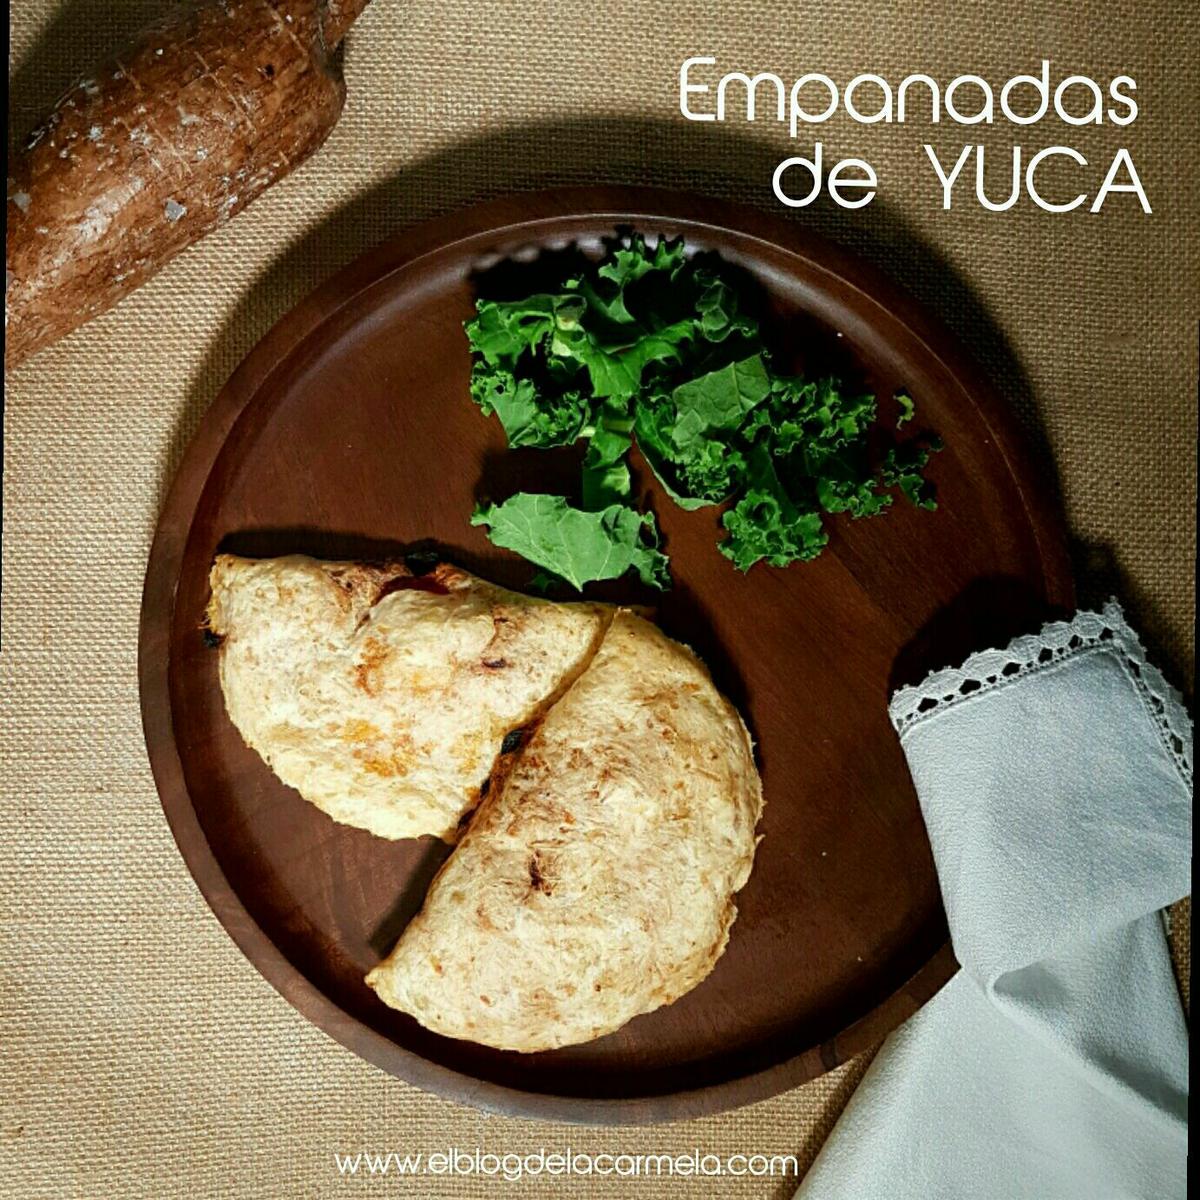 Empanadas de yuca